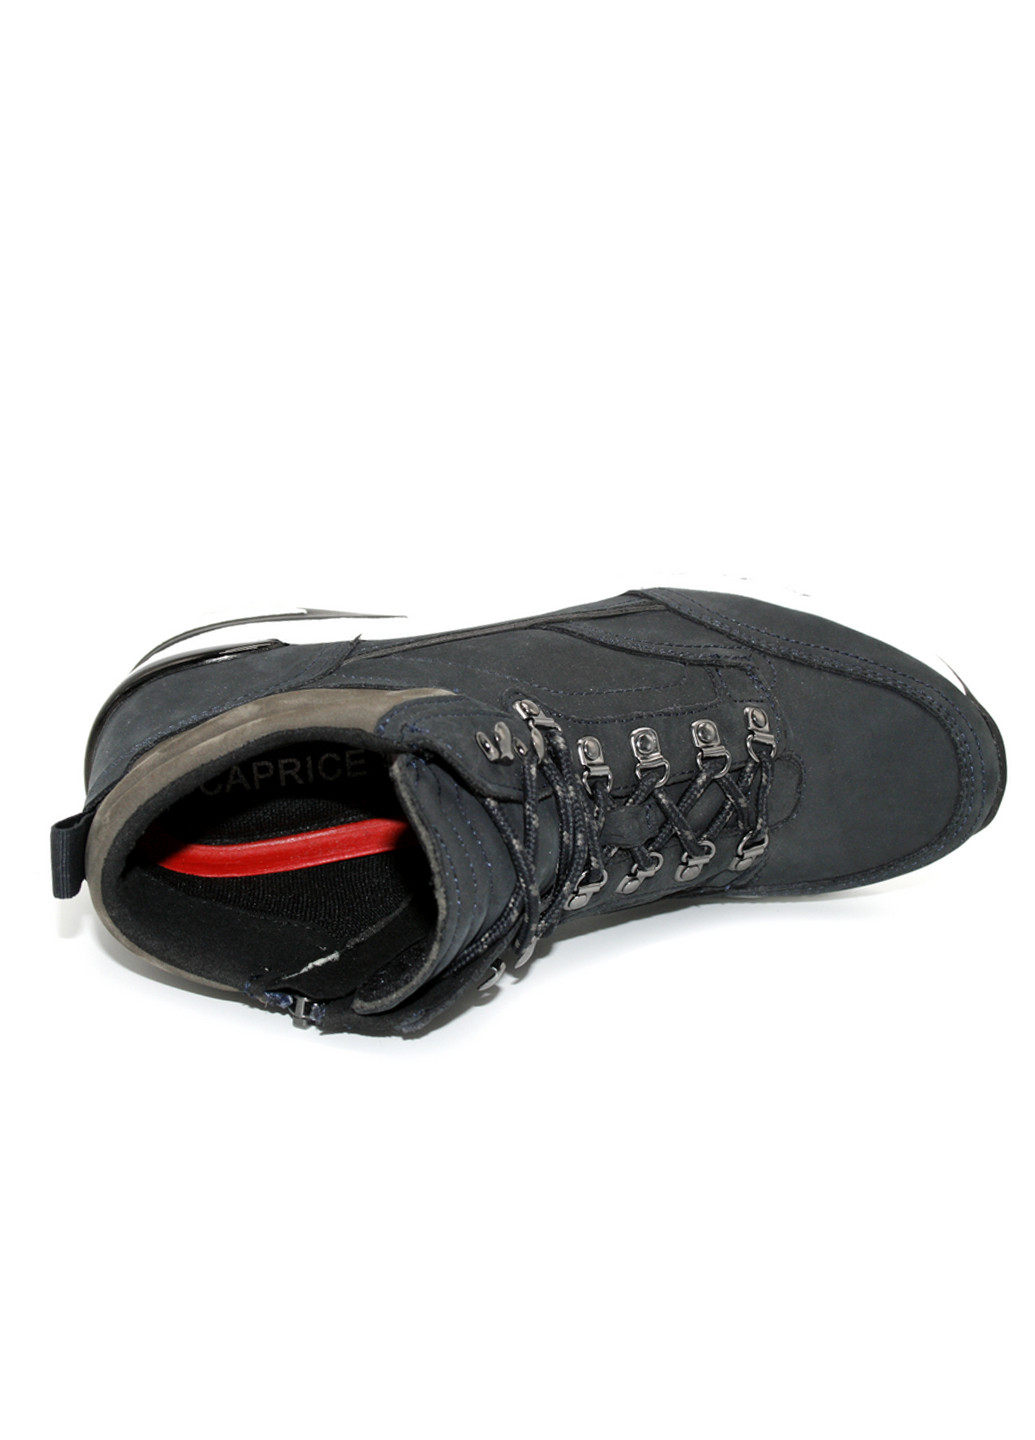 Осенние ботинки сникерсы Caprice со шнуровкой из натурального нубука